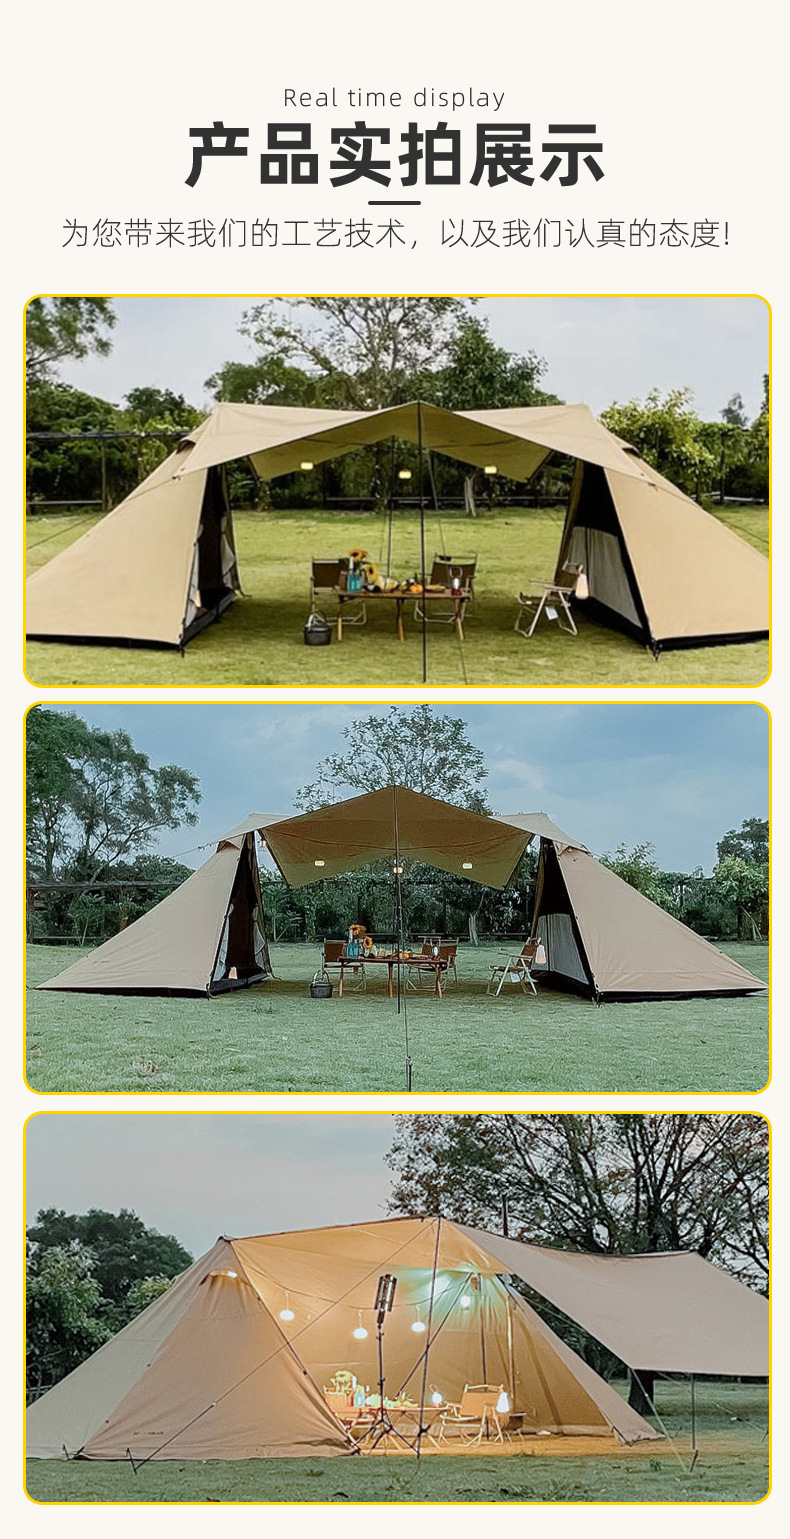 曼巴足迹 屋脊帐篷便携式折叠全自动帐篷投影幕布一体式户外露营帐篷